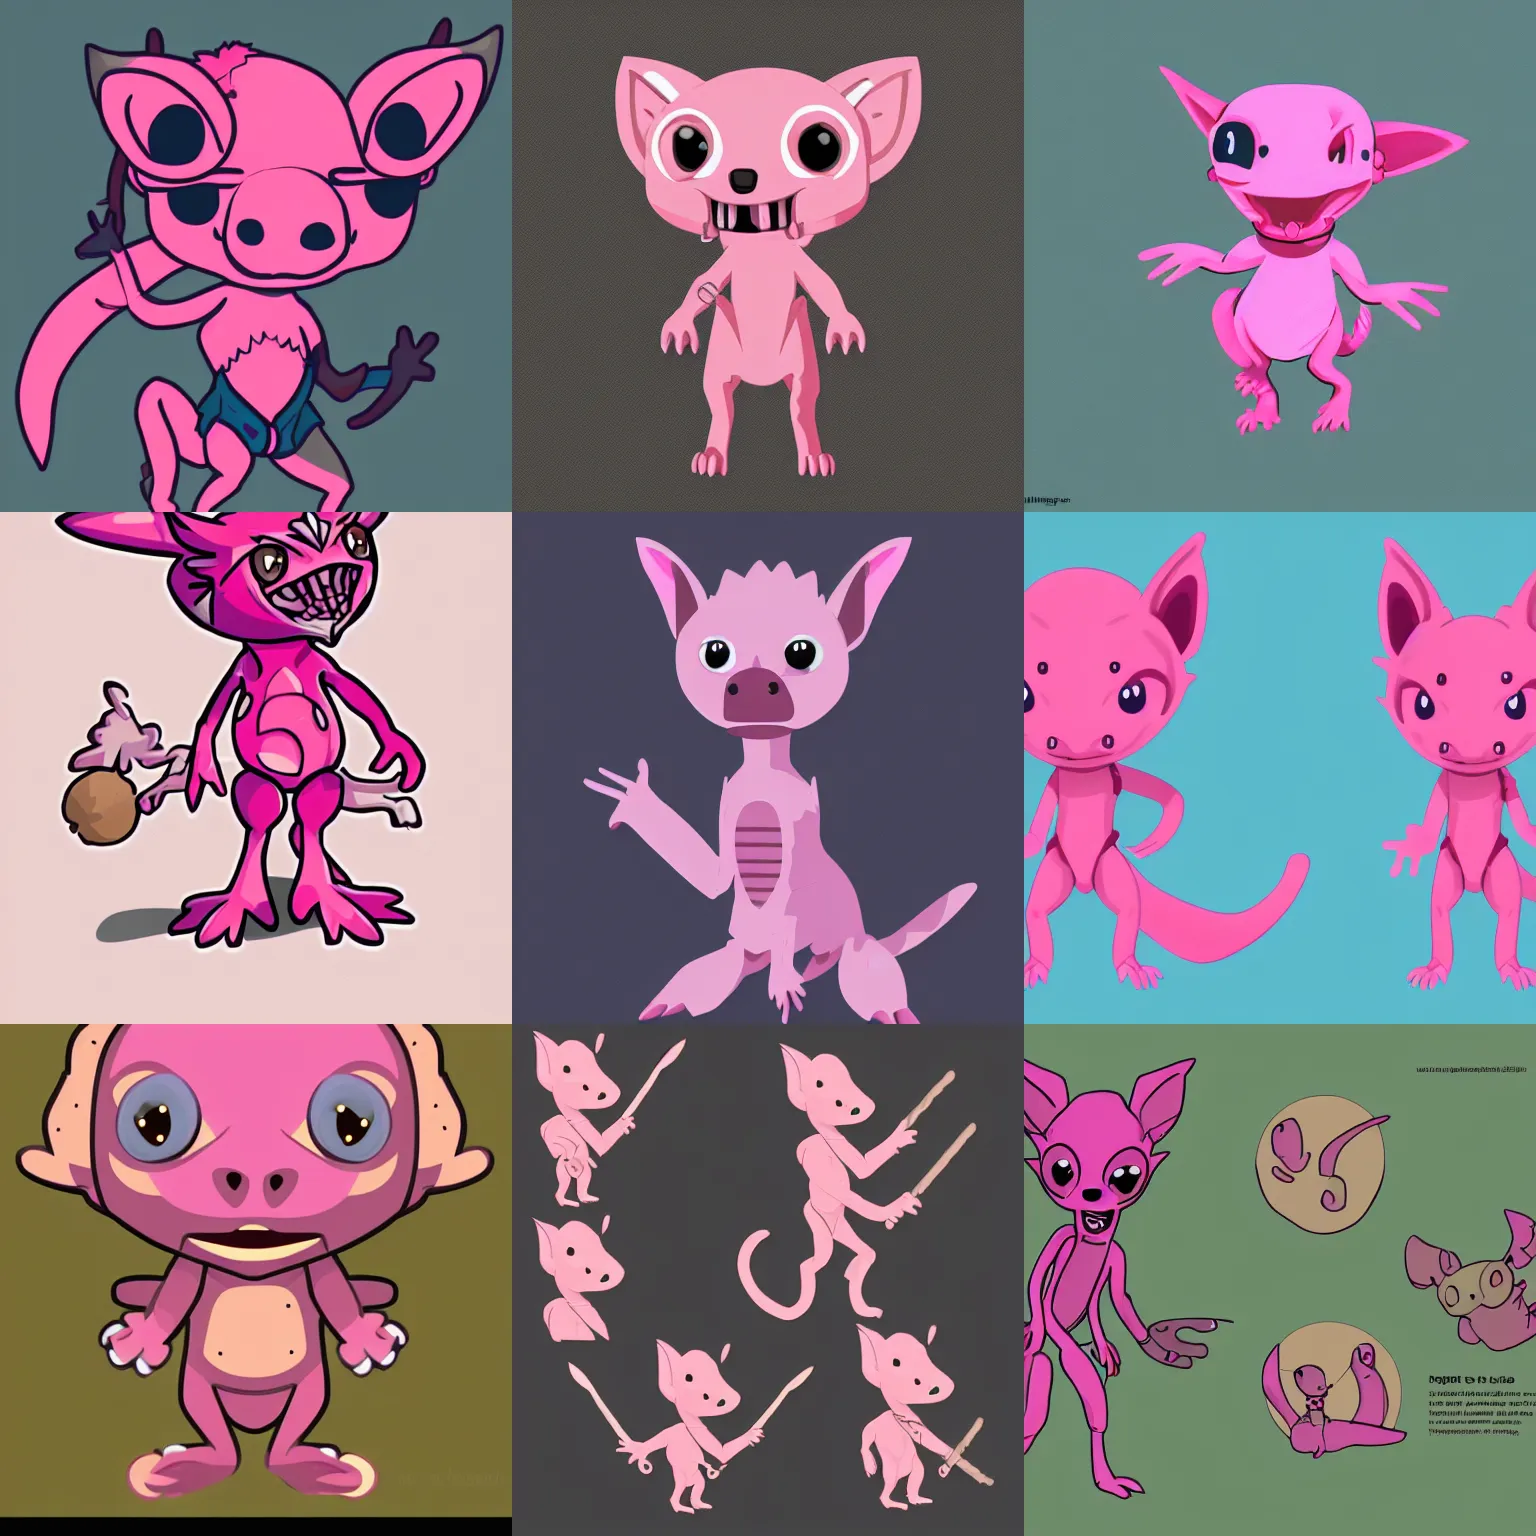 Prompt: A outline illustration of a cute pink Kobold as a world explorer, digital art, vector art, Trending on ArtStation